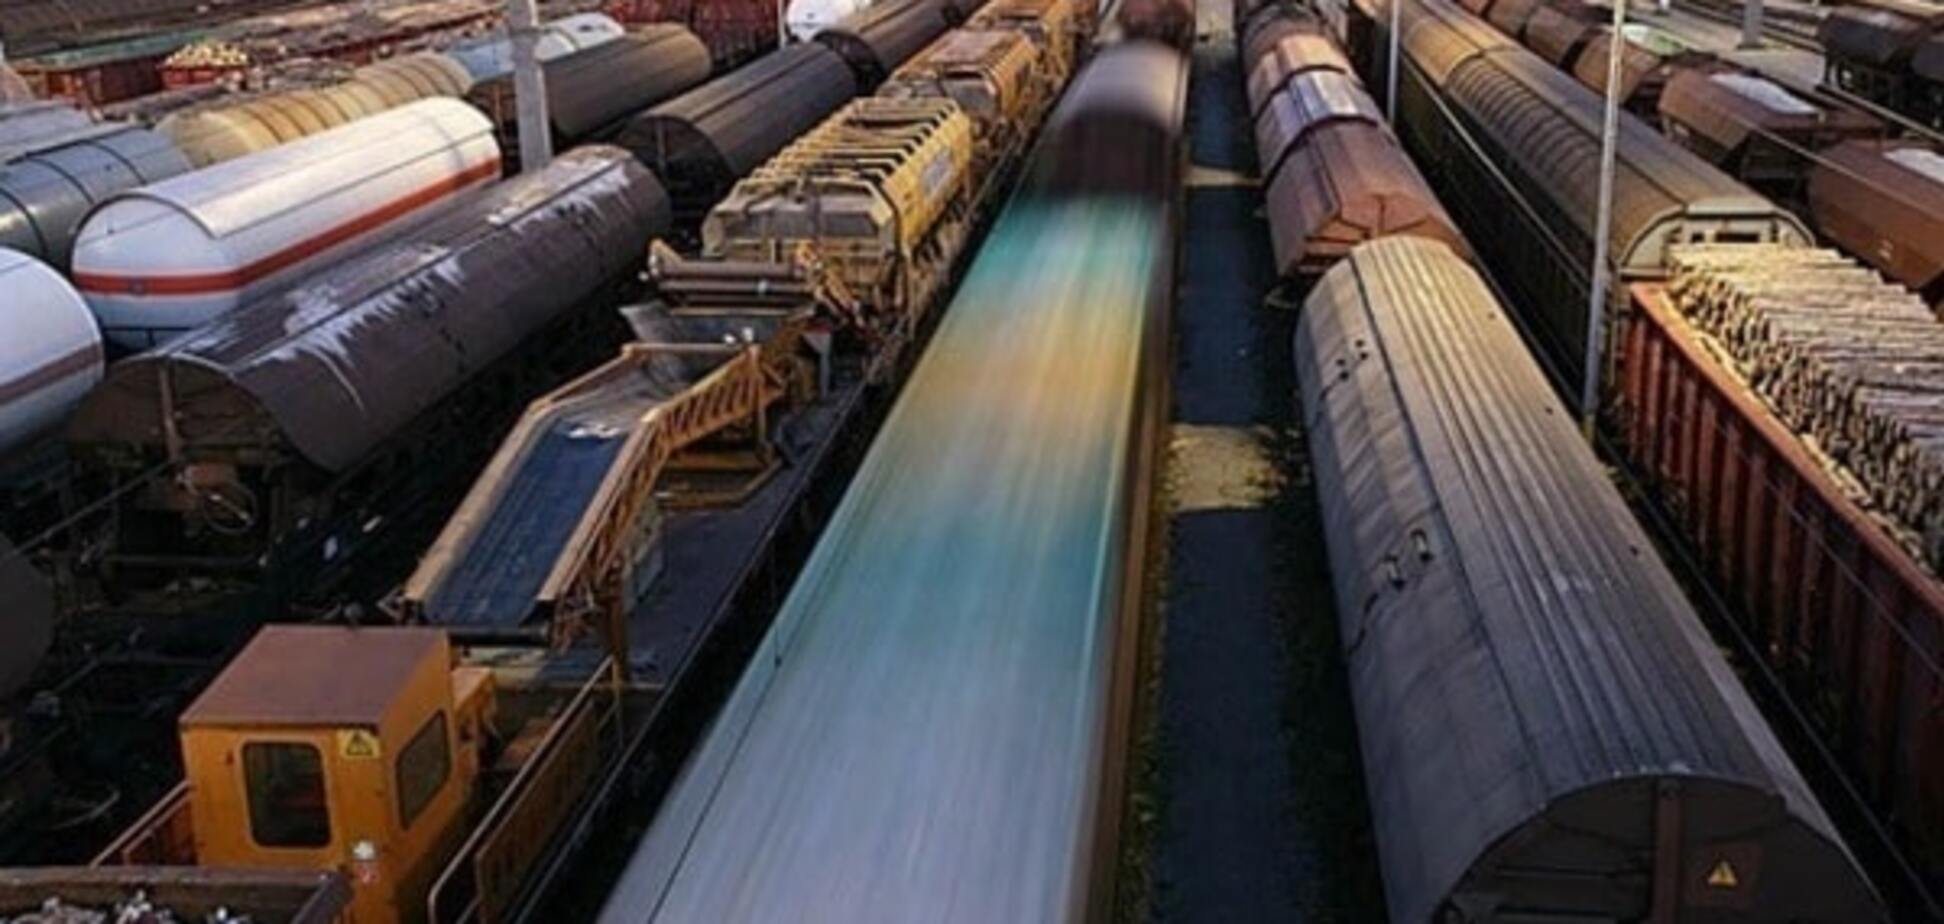 Після закриття Донецької залізниці будуть сотні тисяч безробітних - Федерація металургів